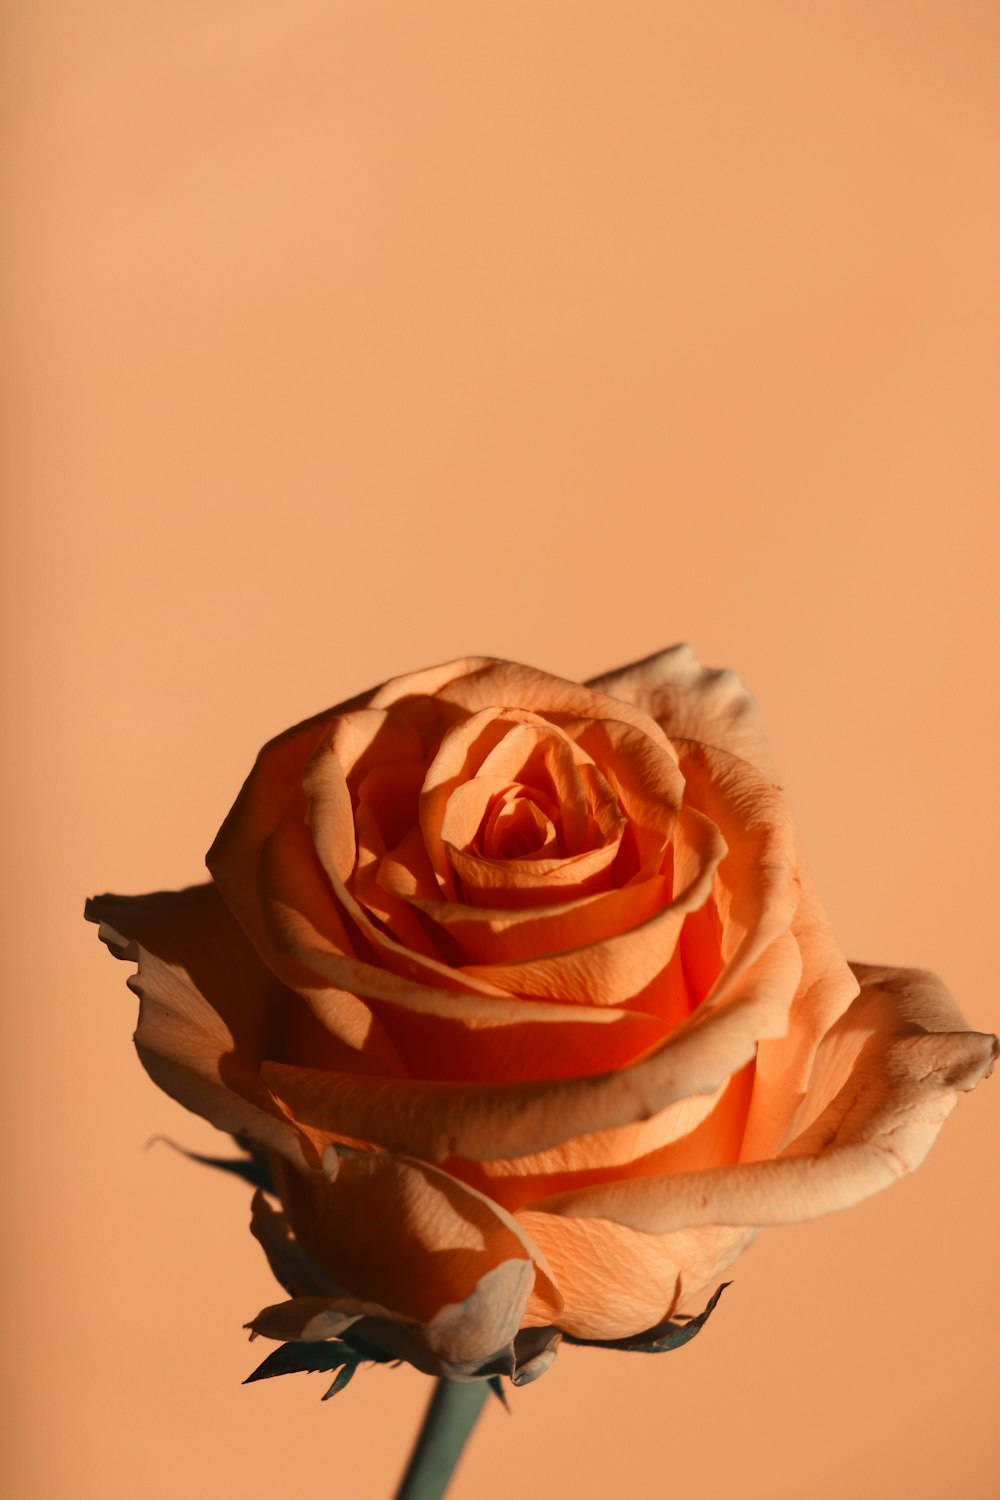 クローズアップ写真のピンクと白のバラ